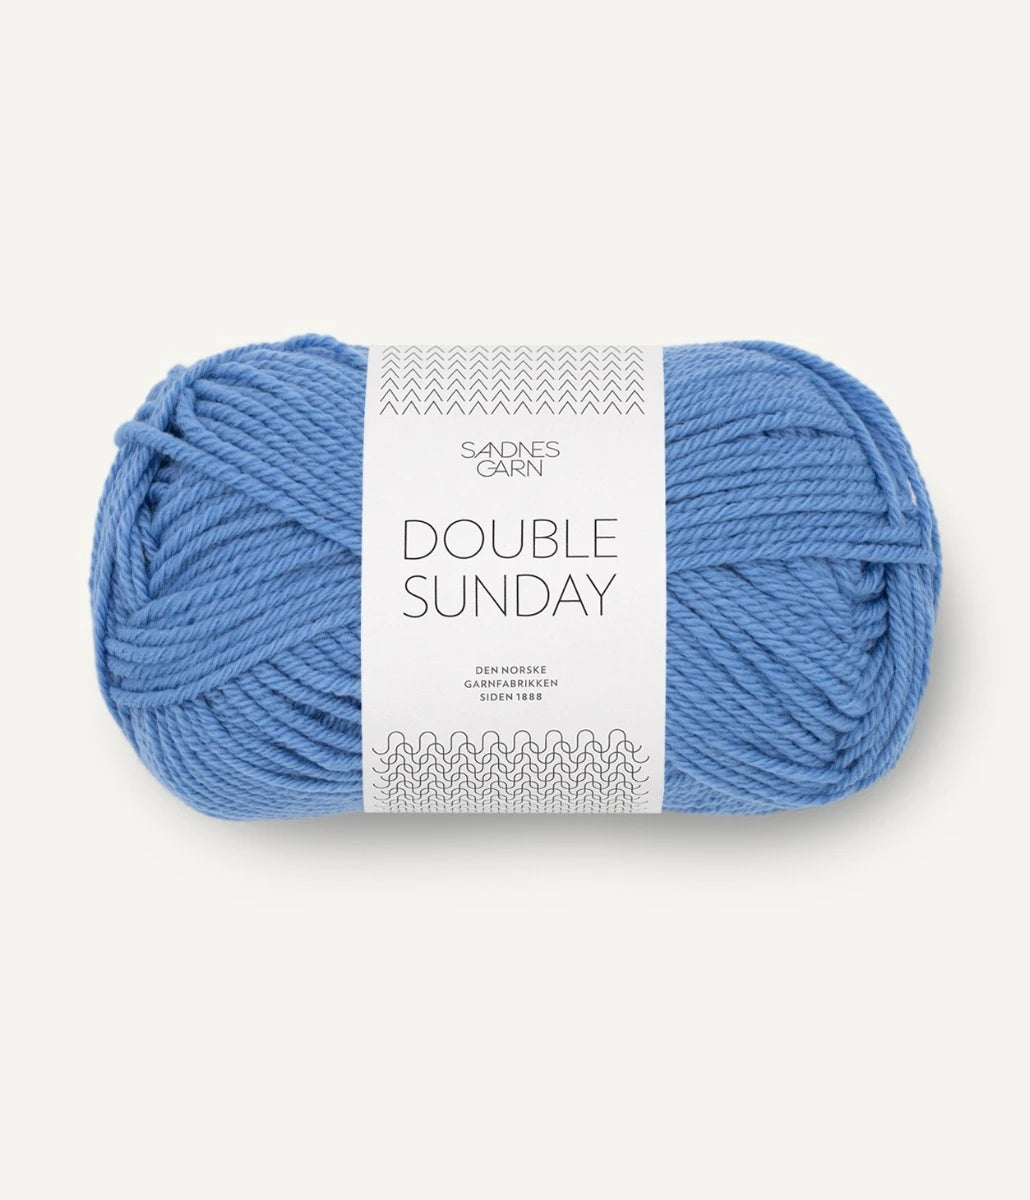 Kuvassa on Sandnes Garn Double Sunday -lanka (yarn) värissä Regatta Blå.